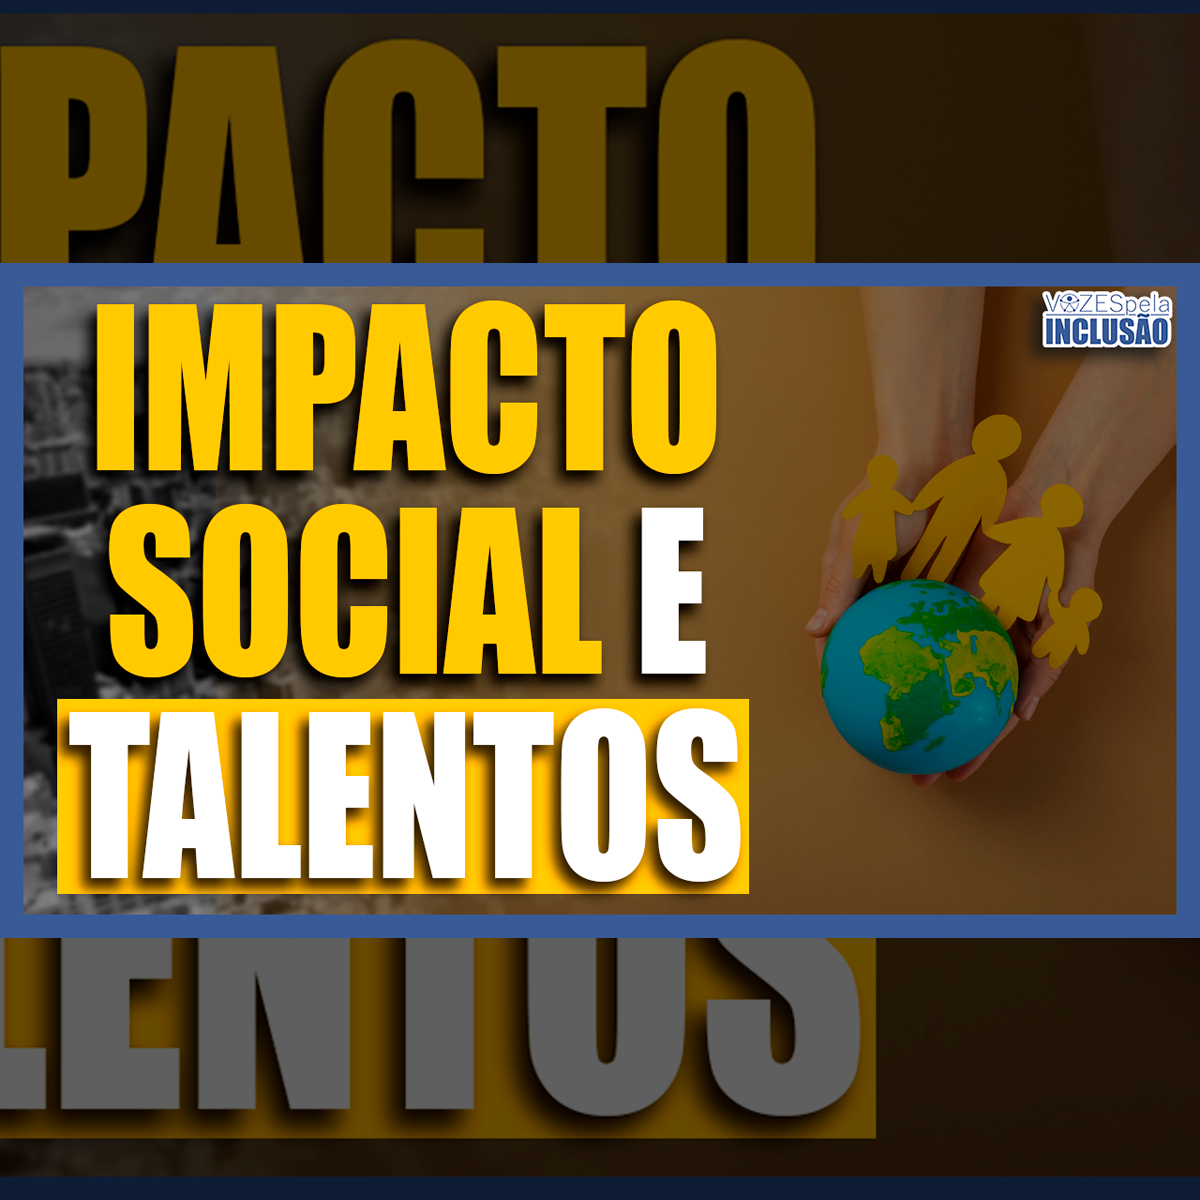 Impacto social, talentos, trabalho e emancipação das pessoas no Vozes pela Inclusão